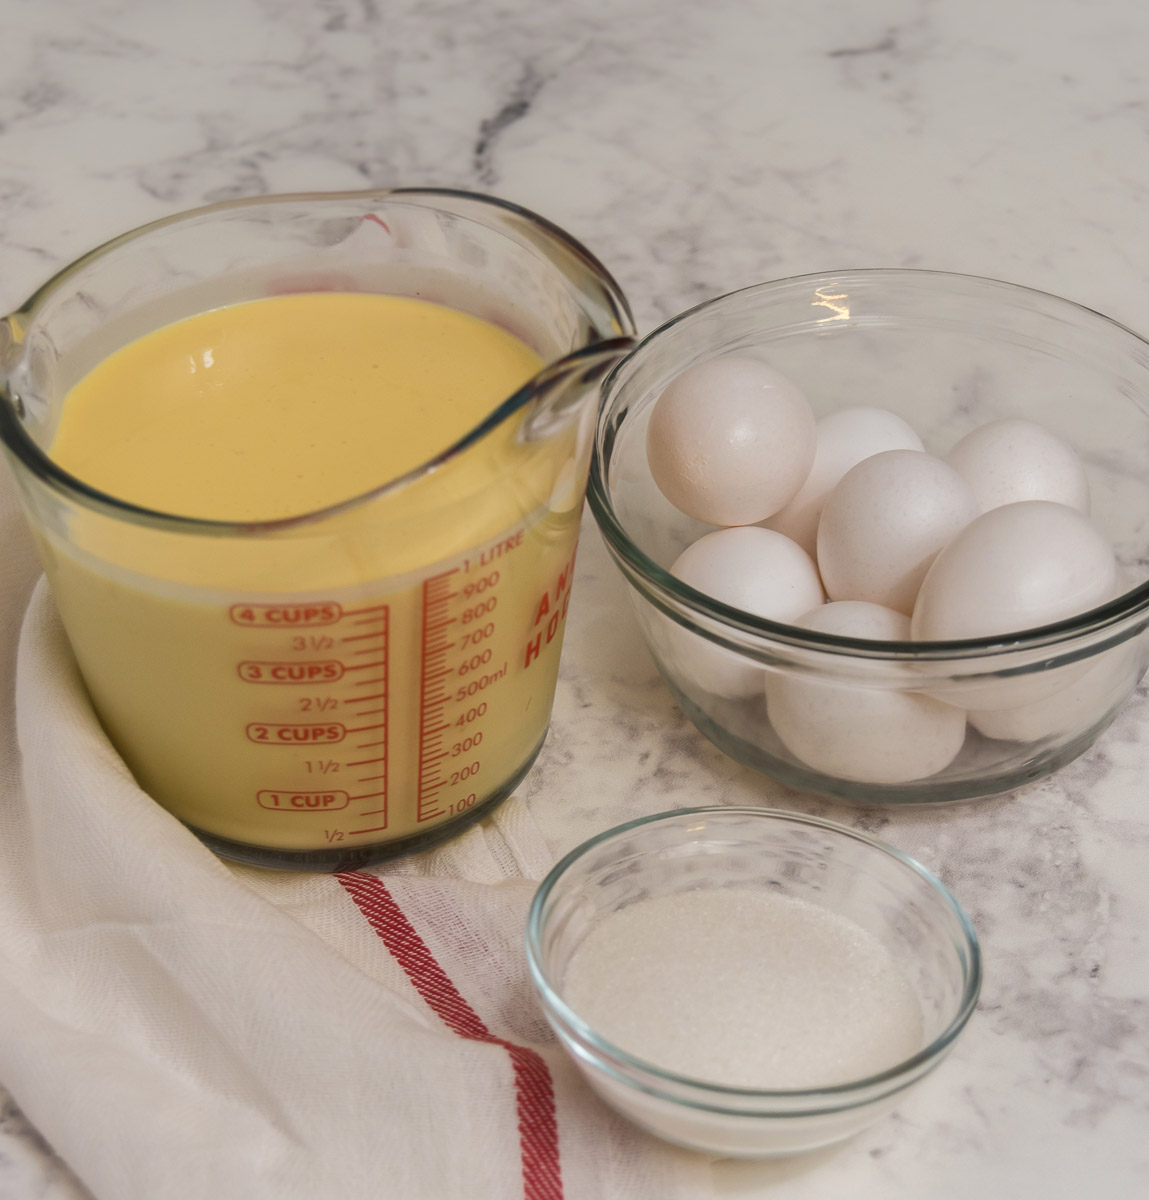 ingredients for eggnog creme brulee: eggnog, egg yolks, sugar